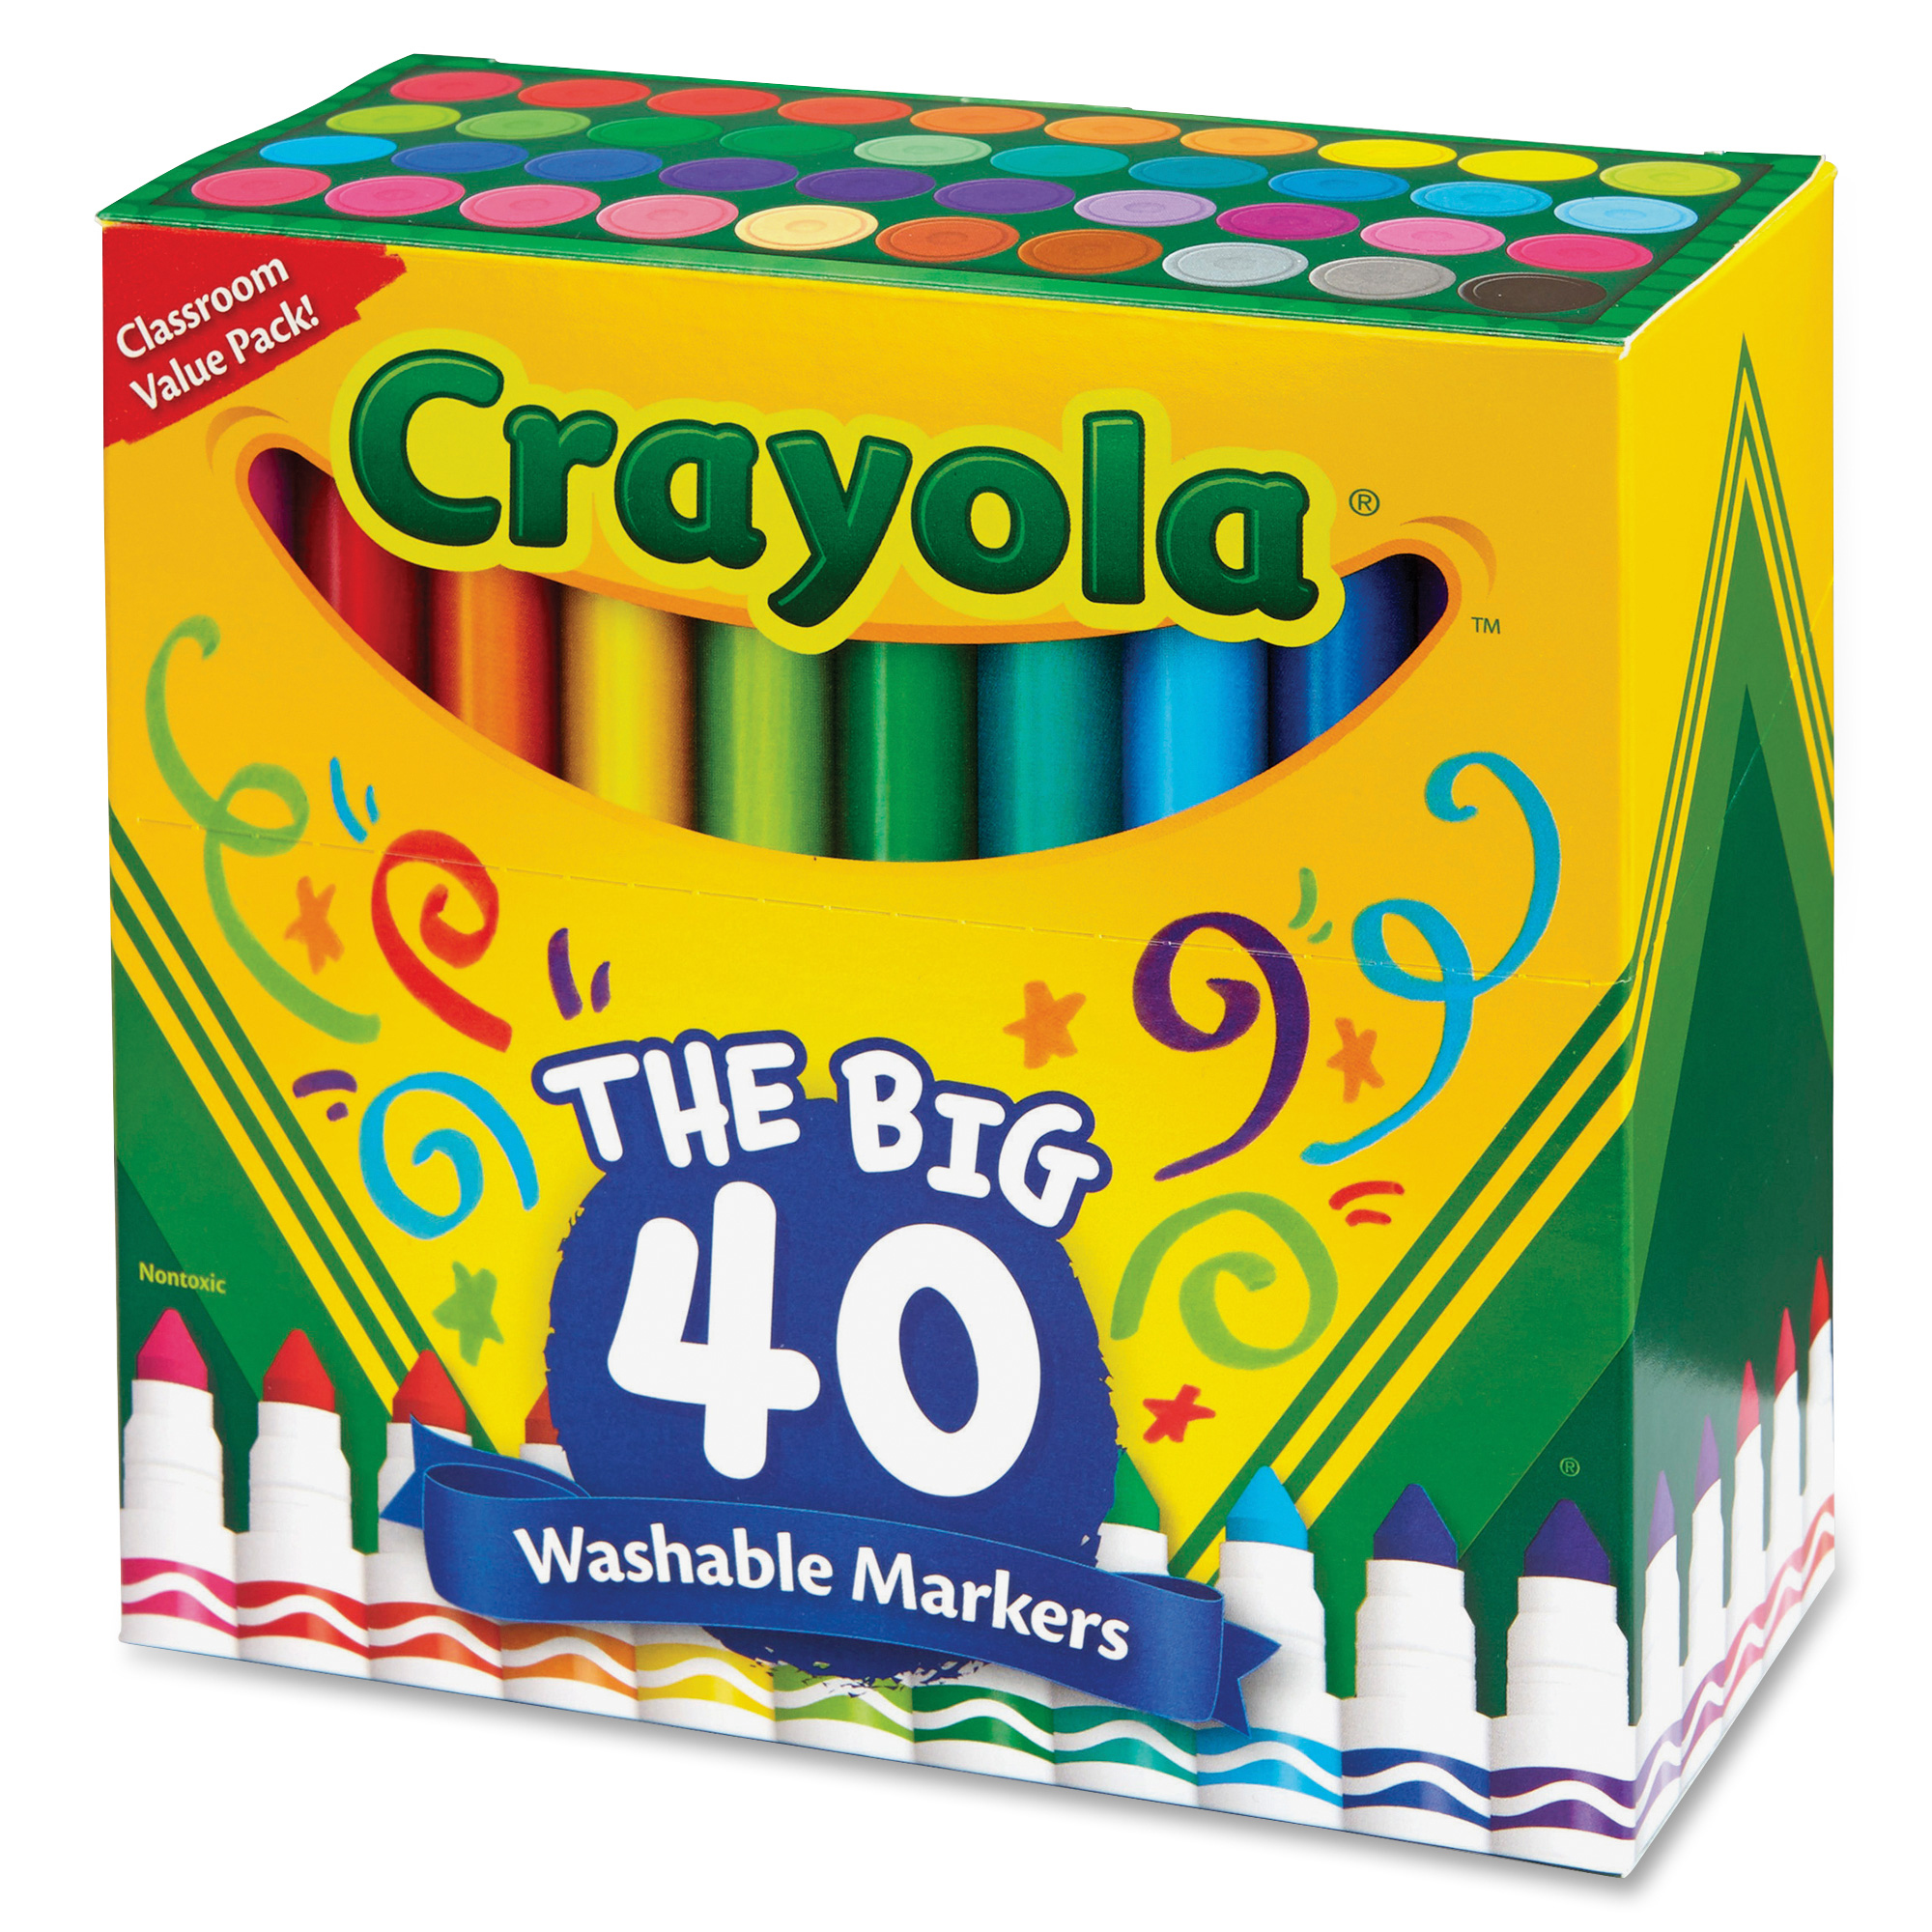 Crayola Original Thick Washable Markers - 3o5umhjs5